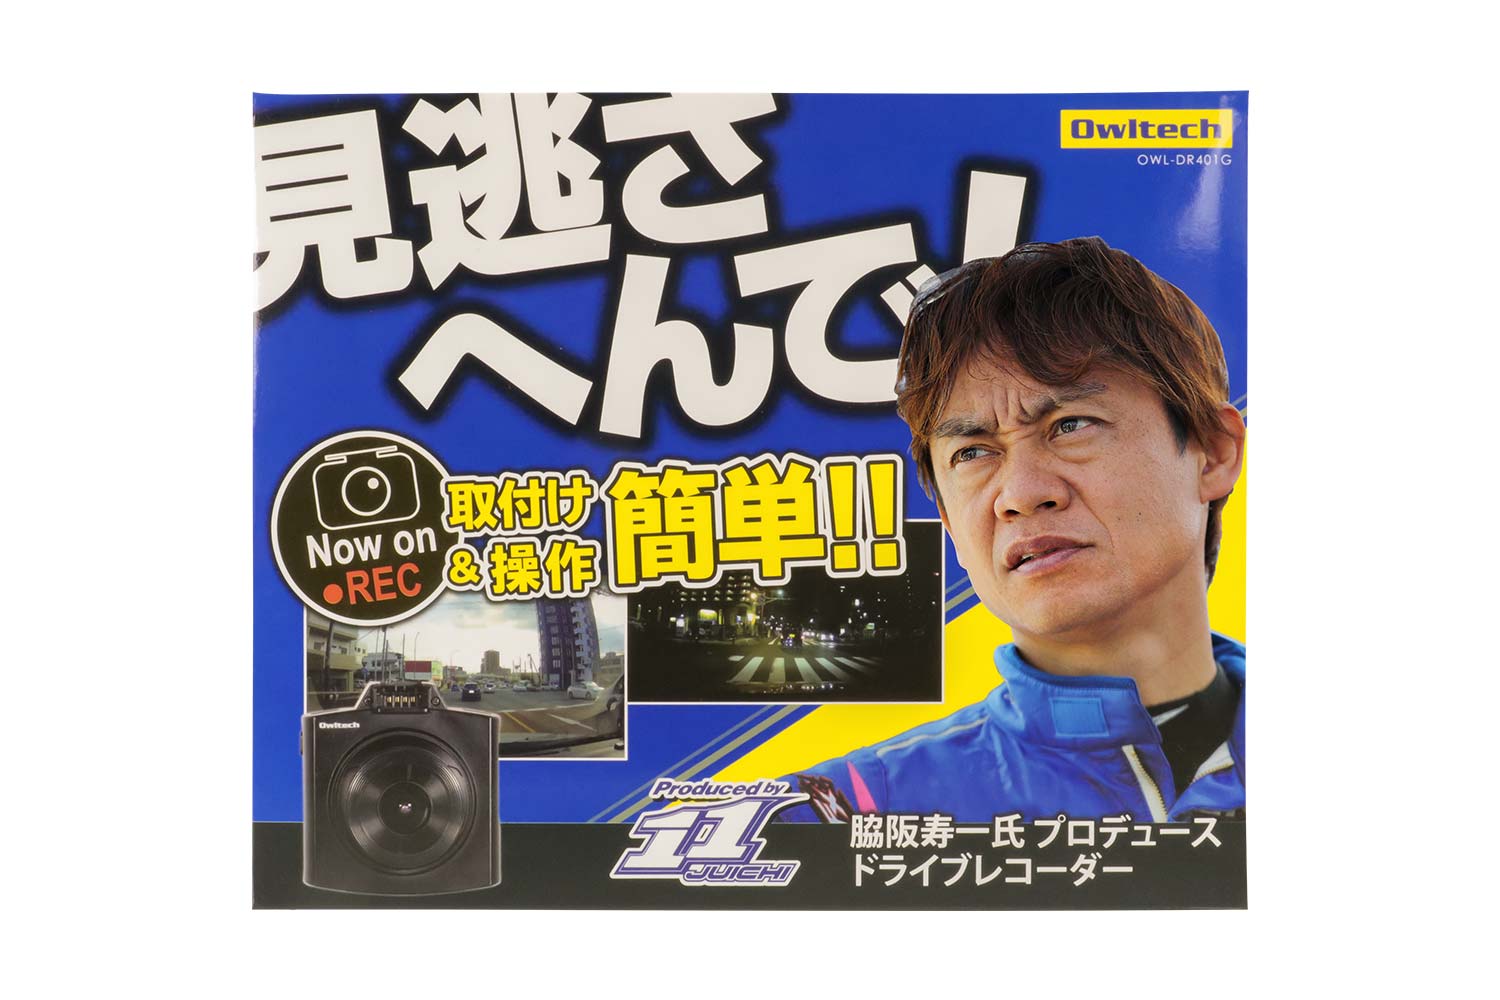 “ミスターGT”脇阪寿一氏プロデュースのドライブレコーダー第2弾、オウルテック「OWL-DR401G」登場